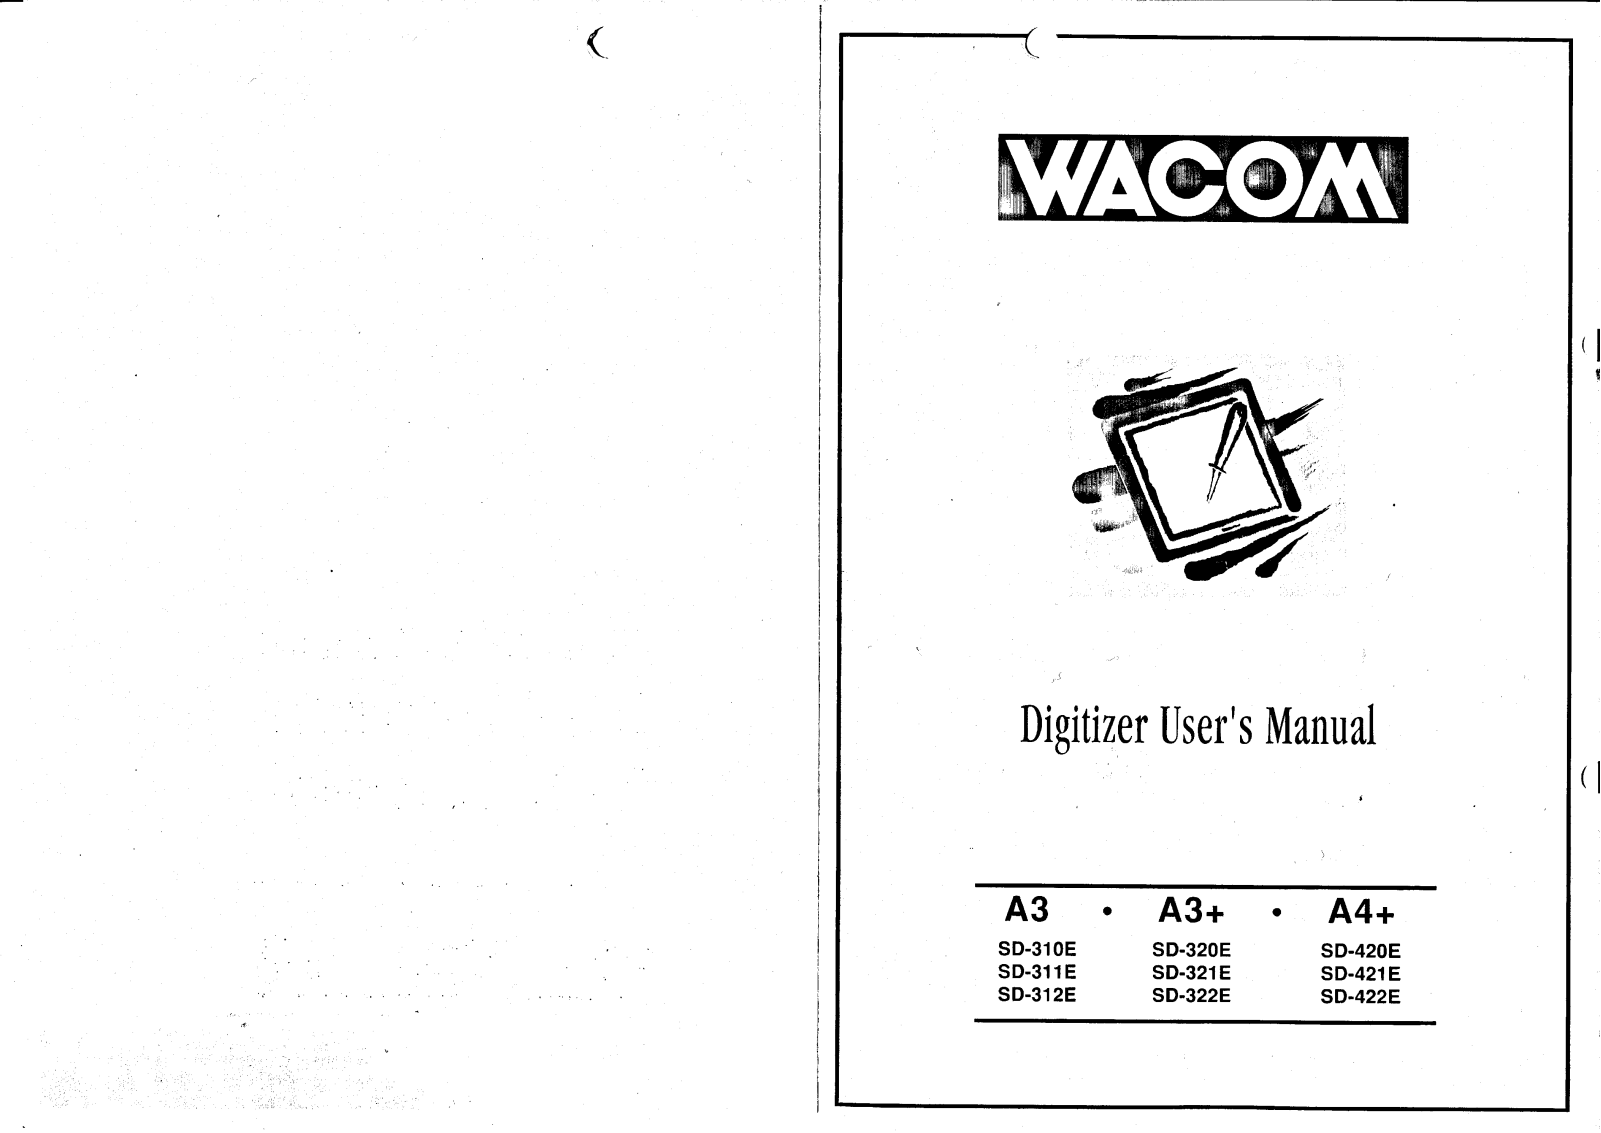 Wacom SD-421E, SD-321E, SD-312E, SD-310E, SD-422E User Manual